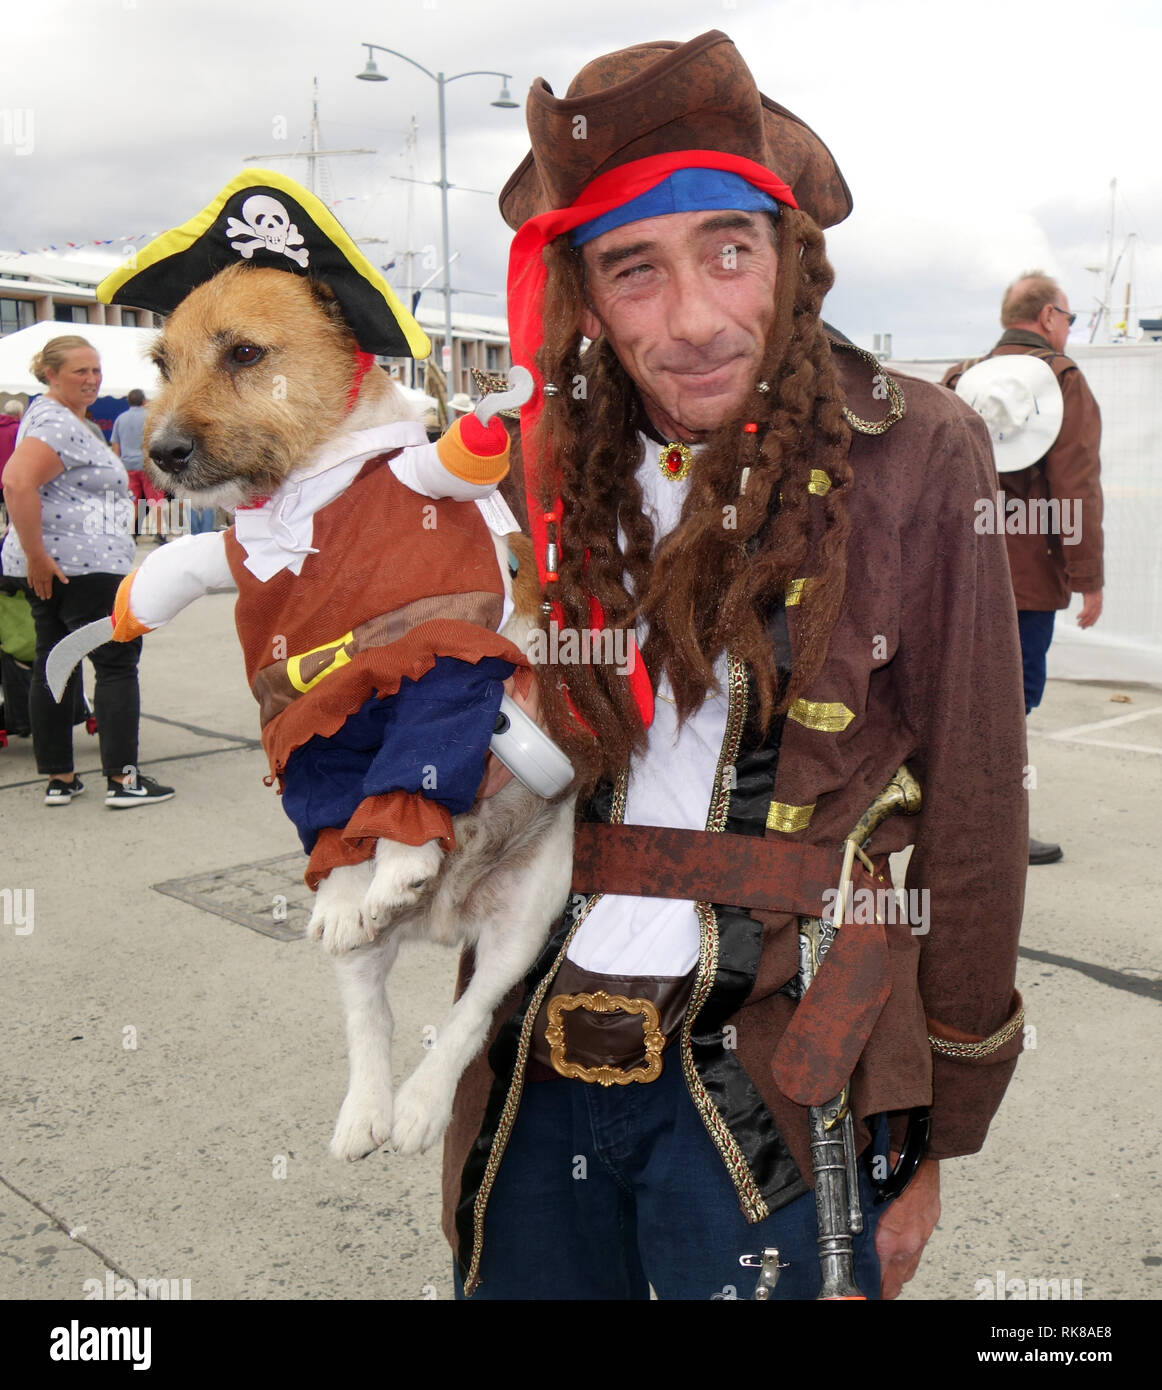 Pirata con su perro que también está en traje de pirata, barco de madera australiana Festival 2019, Hobart, Tasmania, Australia. No, señor Foto de stock